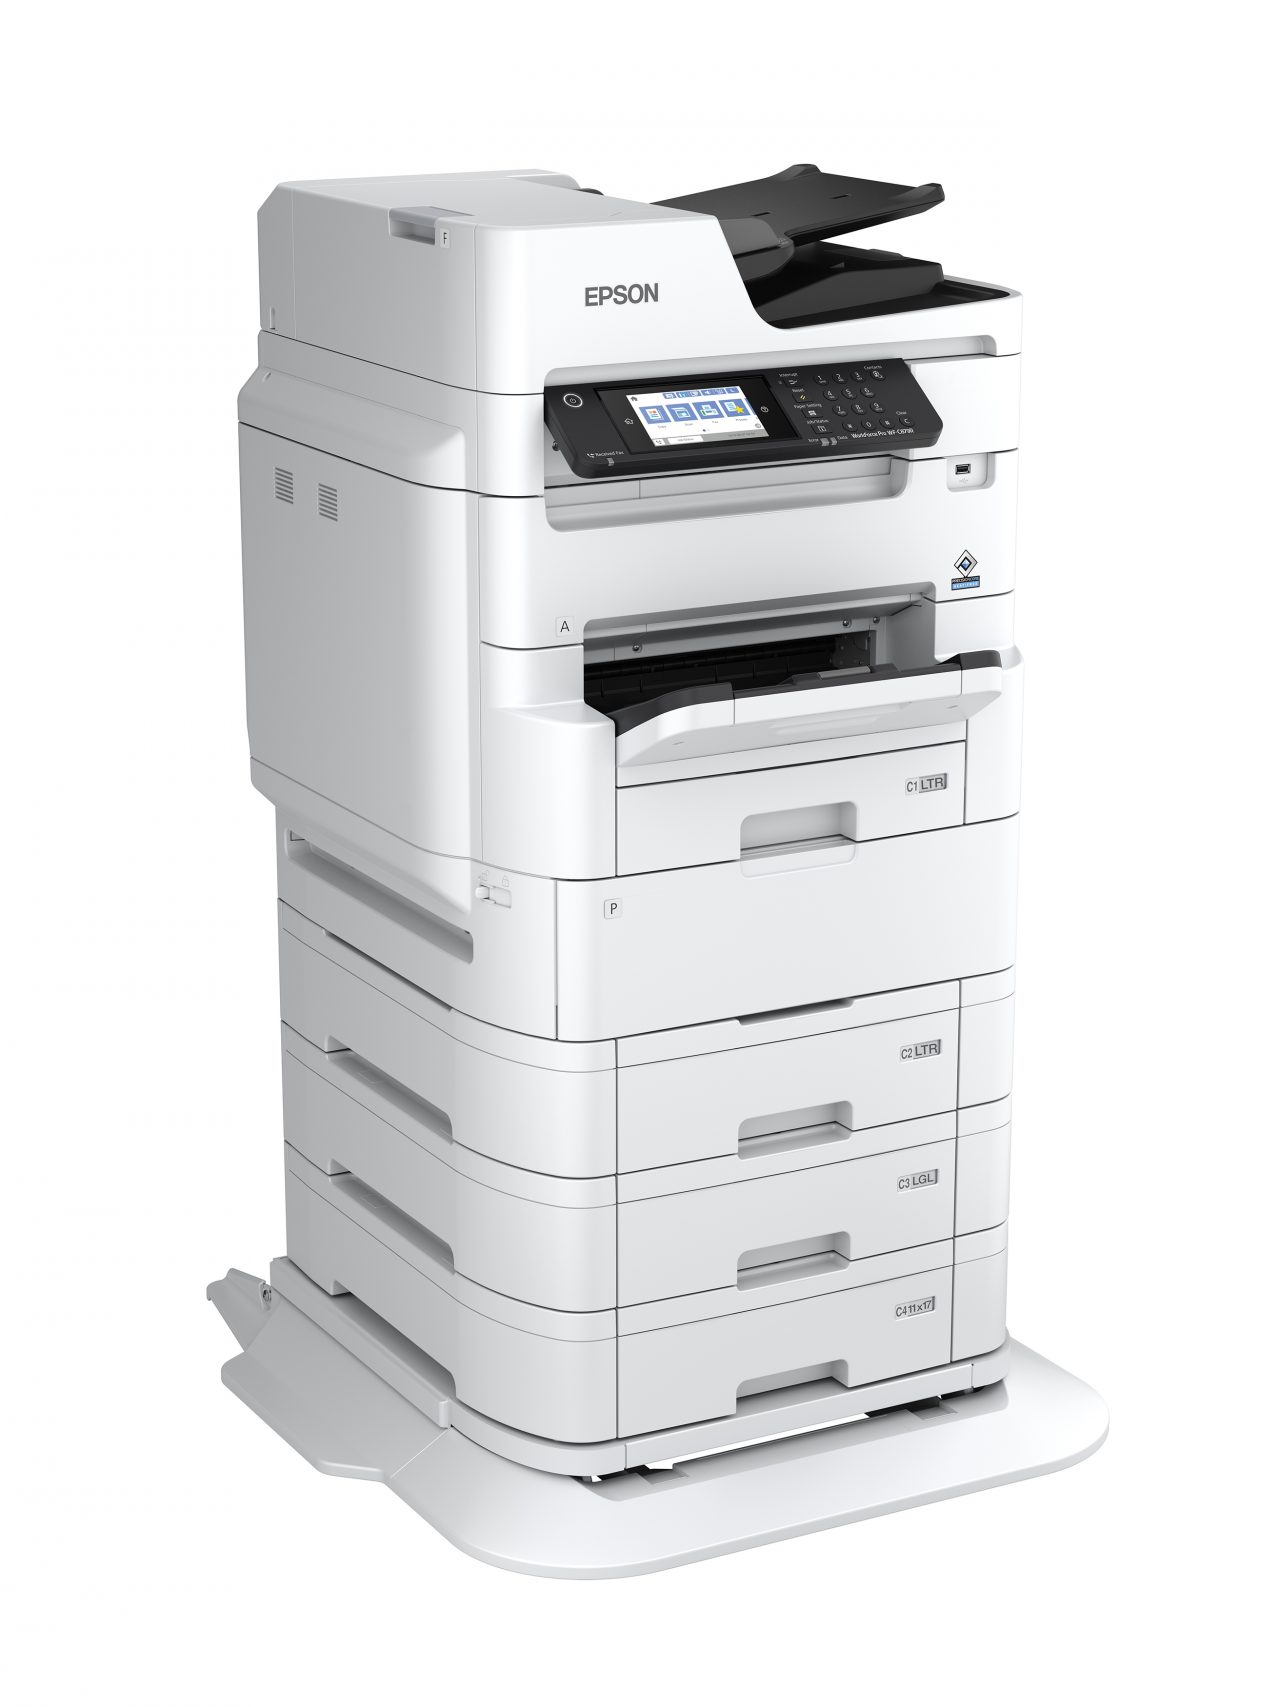 Epson Workforce® Pro Wf C879r Multifunction Color Printer Eastern Engineering 2855